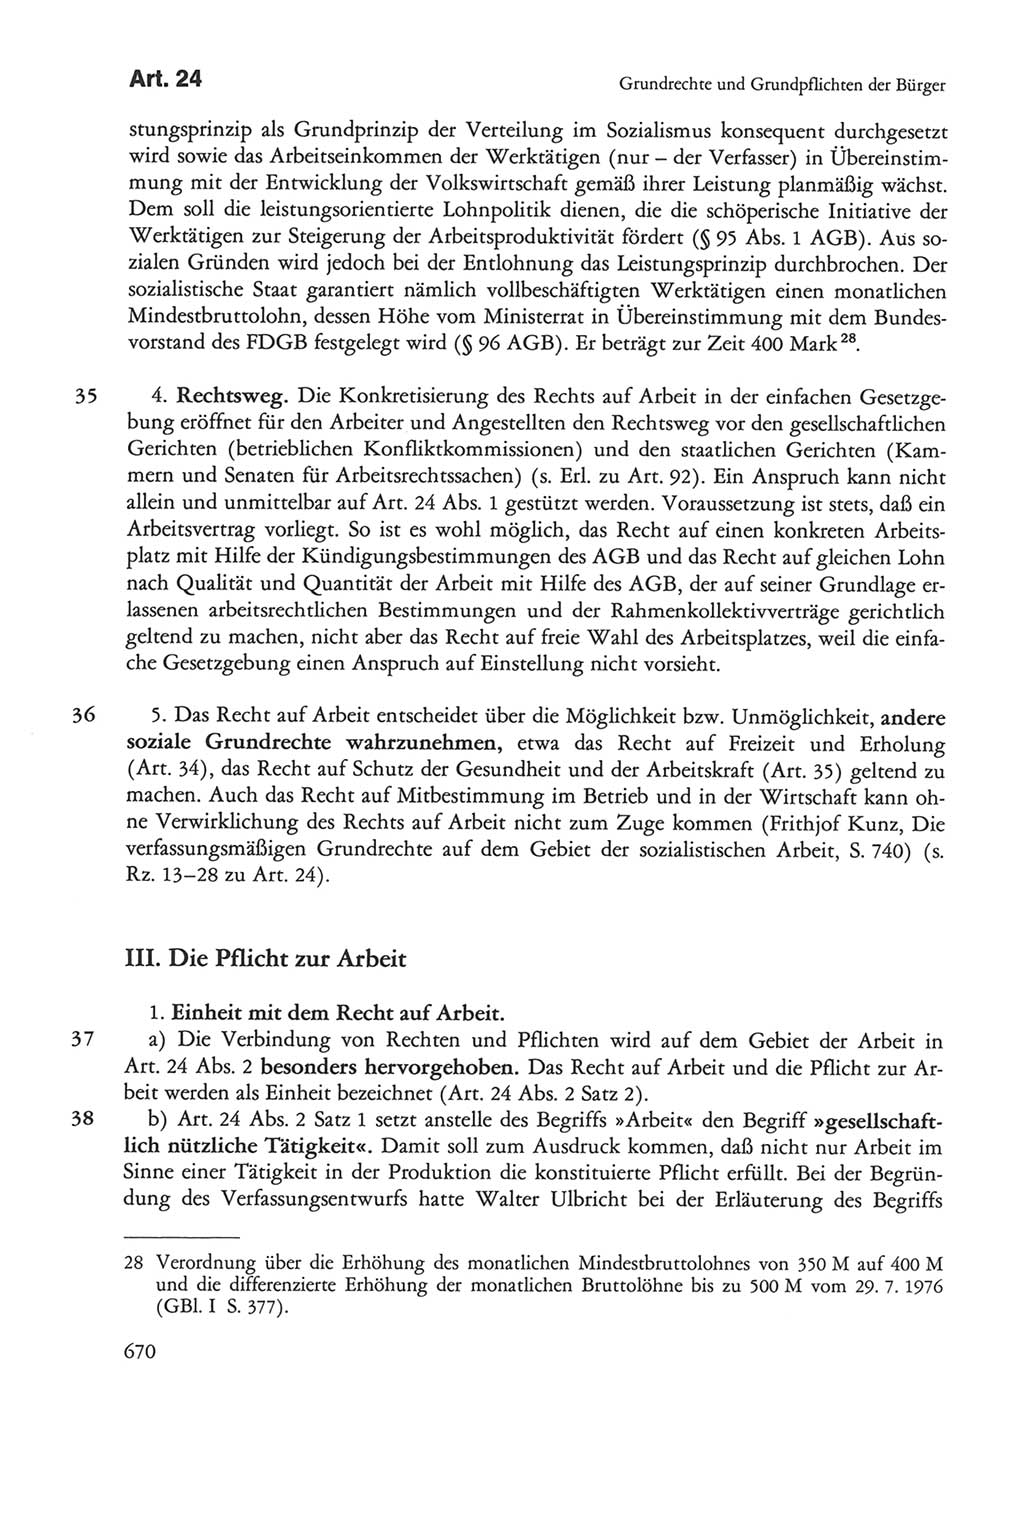 Die sozialistische Verfassung der Deutschen Demokratischen Republik (DDR), Kommentar mit einem Nachtrag 1997, Seite 670 (Soz. Verf. DDR Komm. Nachtr. 1997, S. 670)